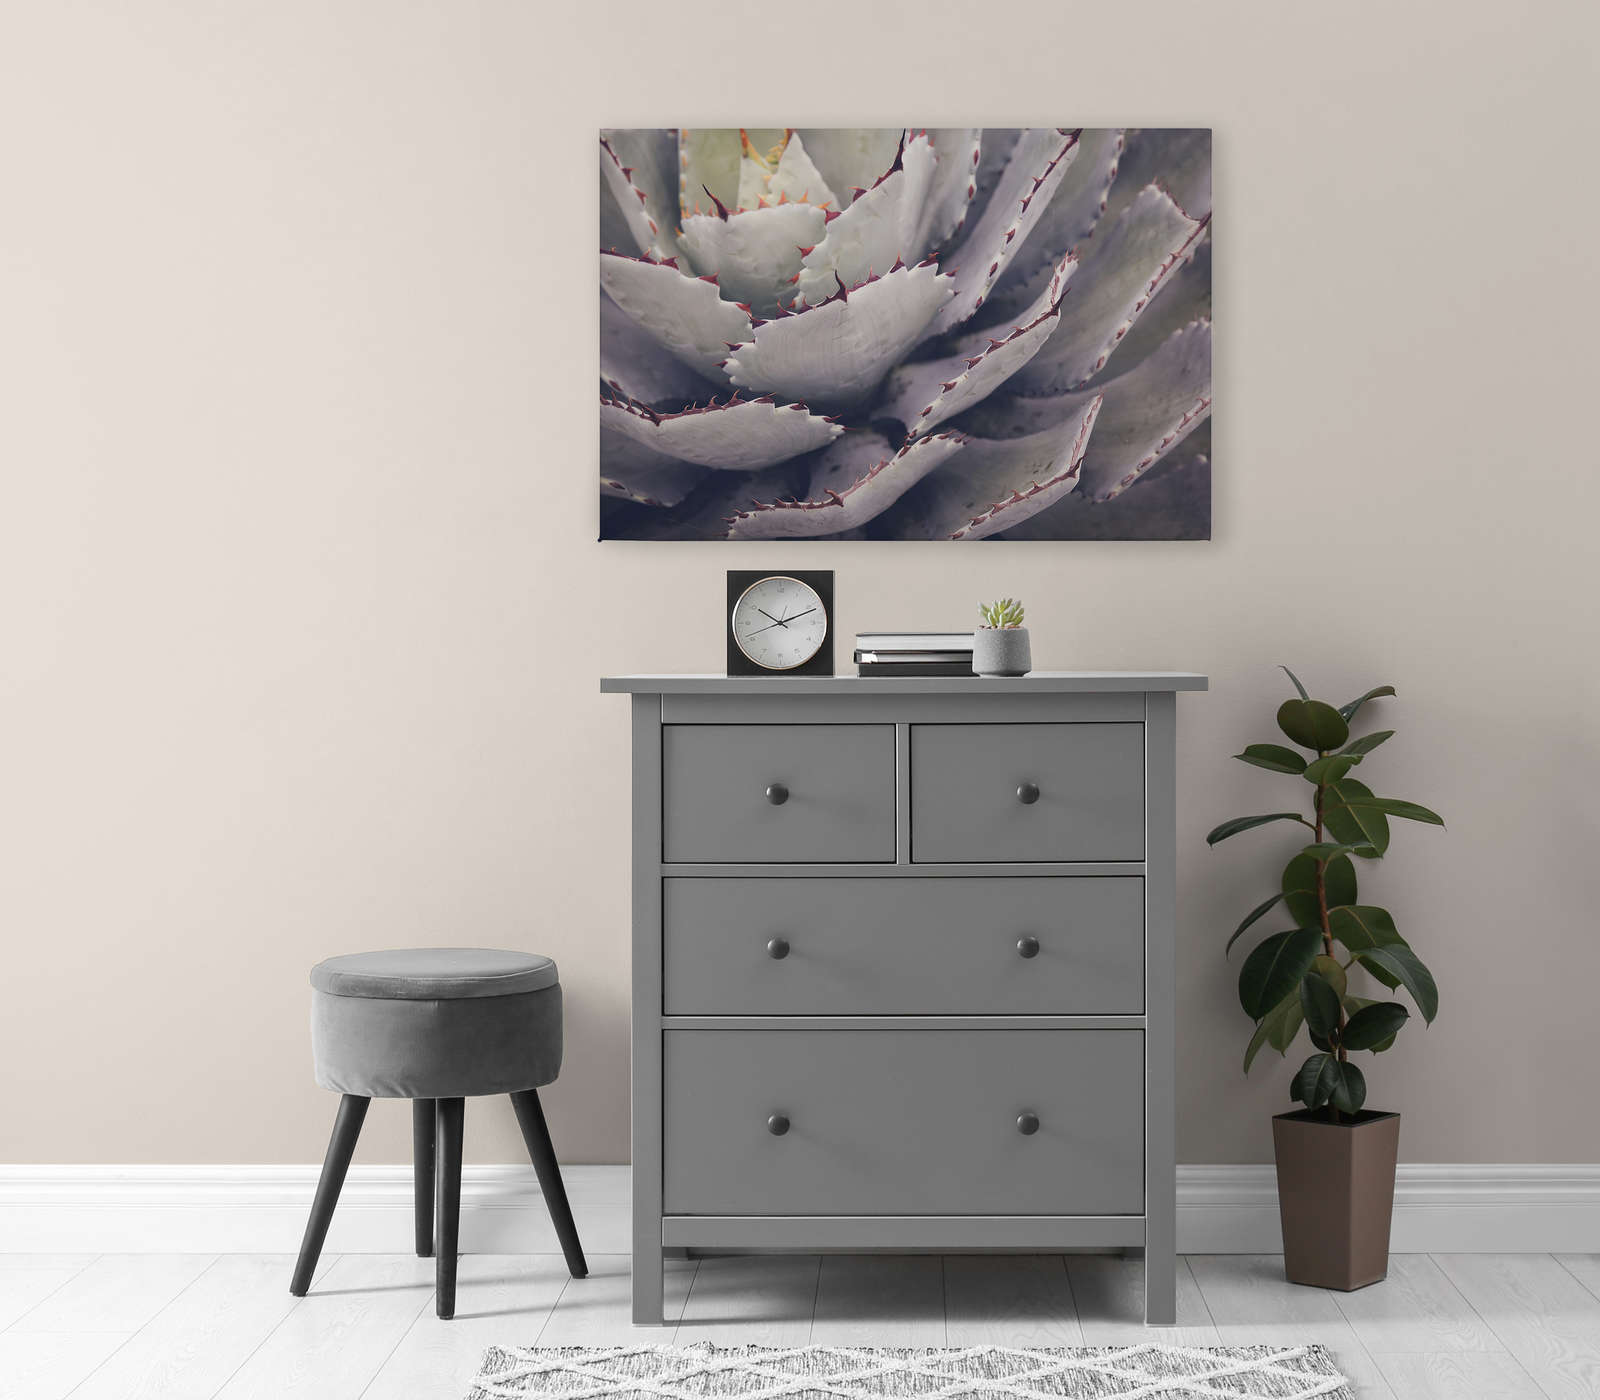             Canvas schilderij met close-up van een cactus - 0,90 m x 0,60 m
        